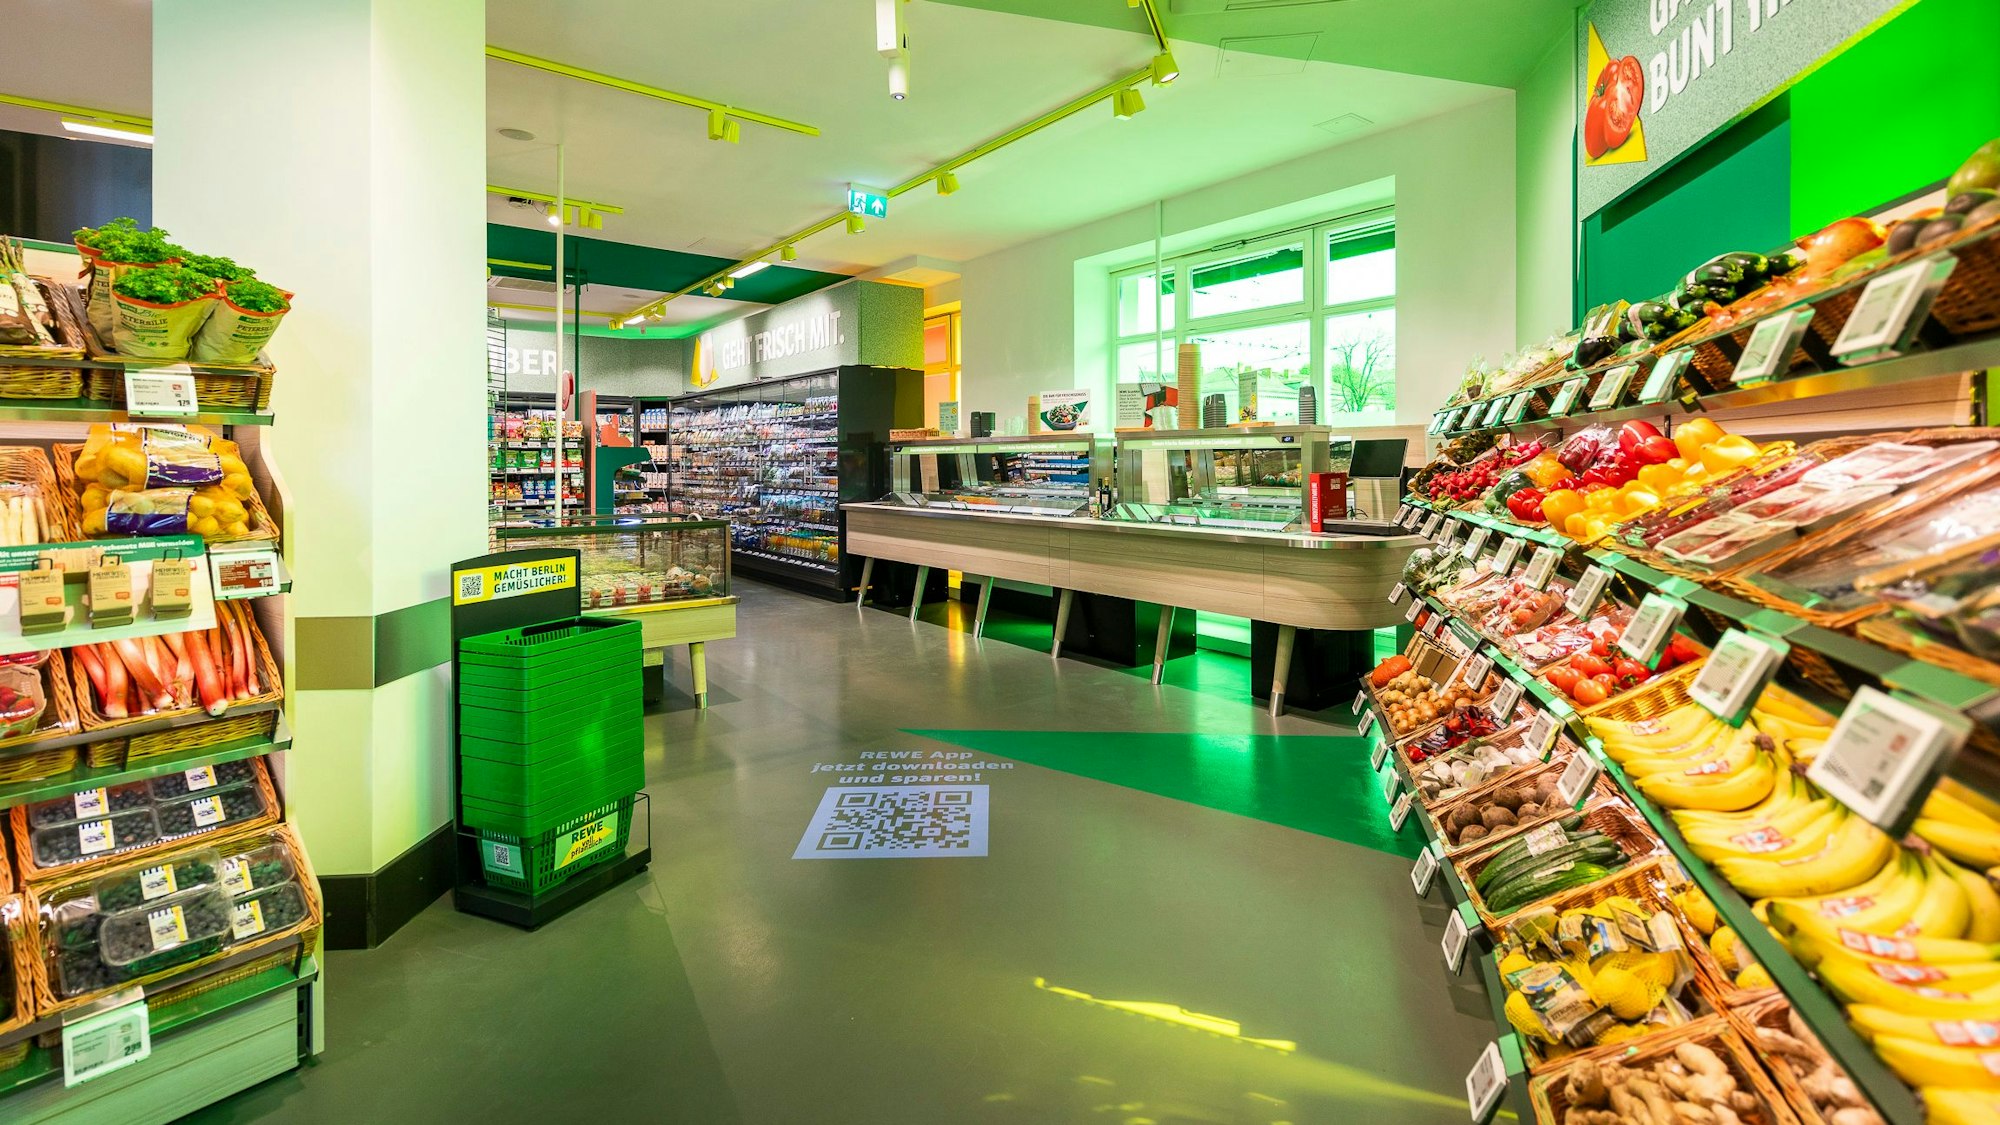 Zu sehen ist ein Supermarkt mit grünem Farbkonzept.